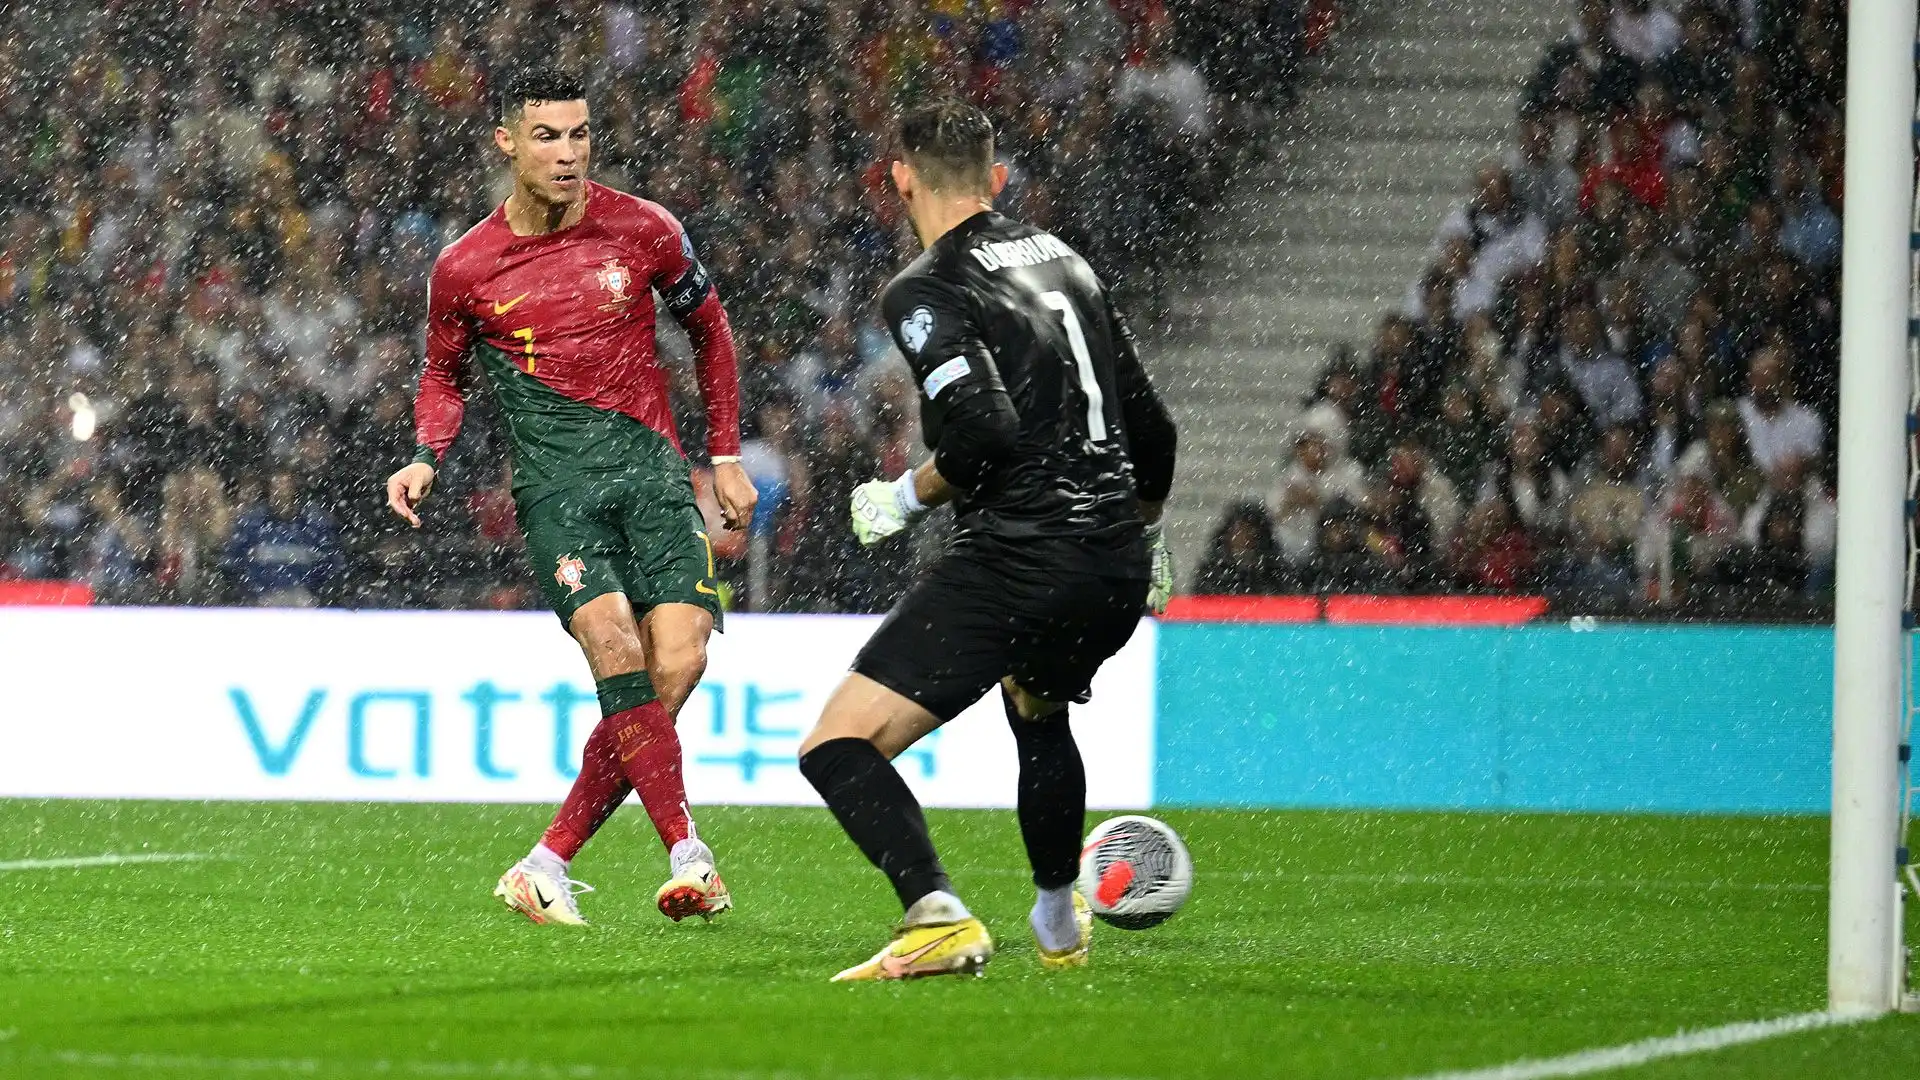 Ora Ronaldo guarda già alla prossima sfida: il 16 ottobre c'è Bosnia Erzegovina-Portogallo